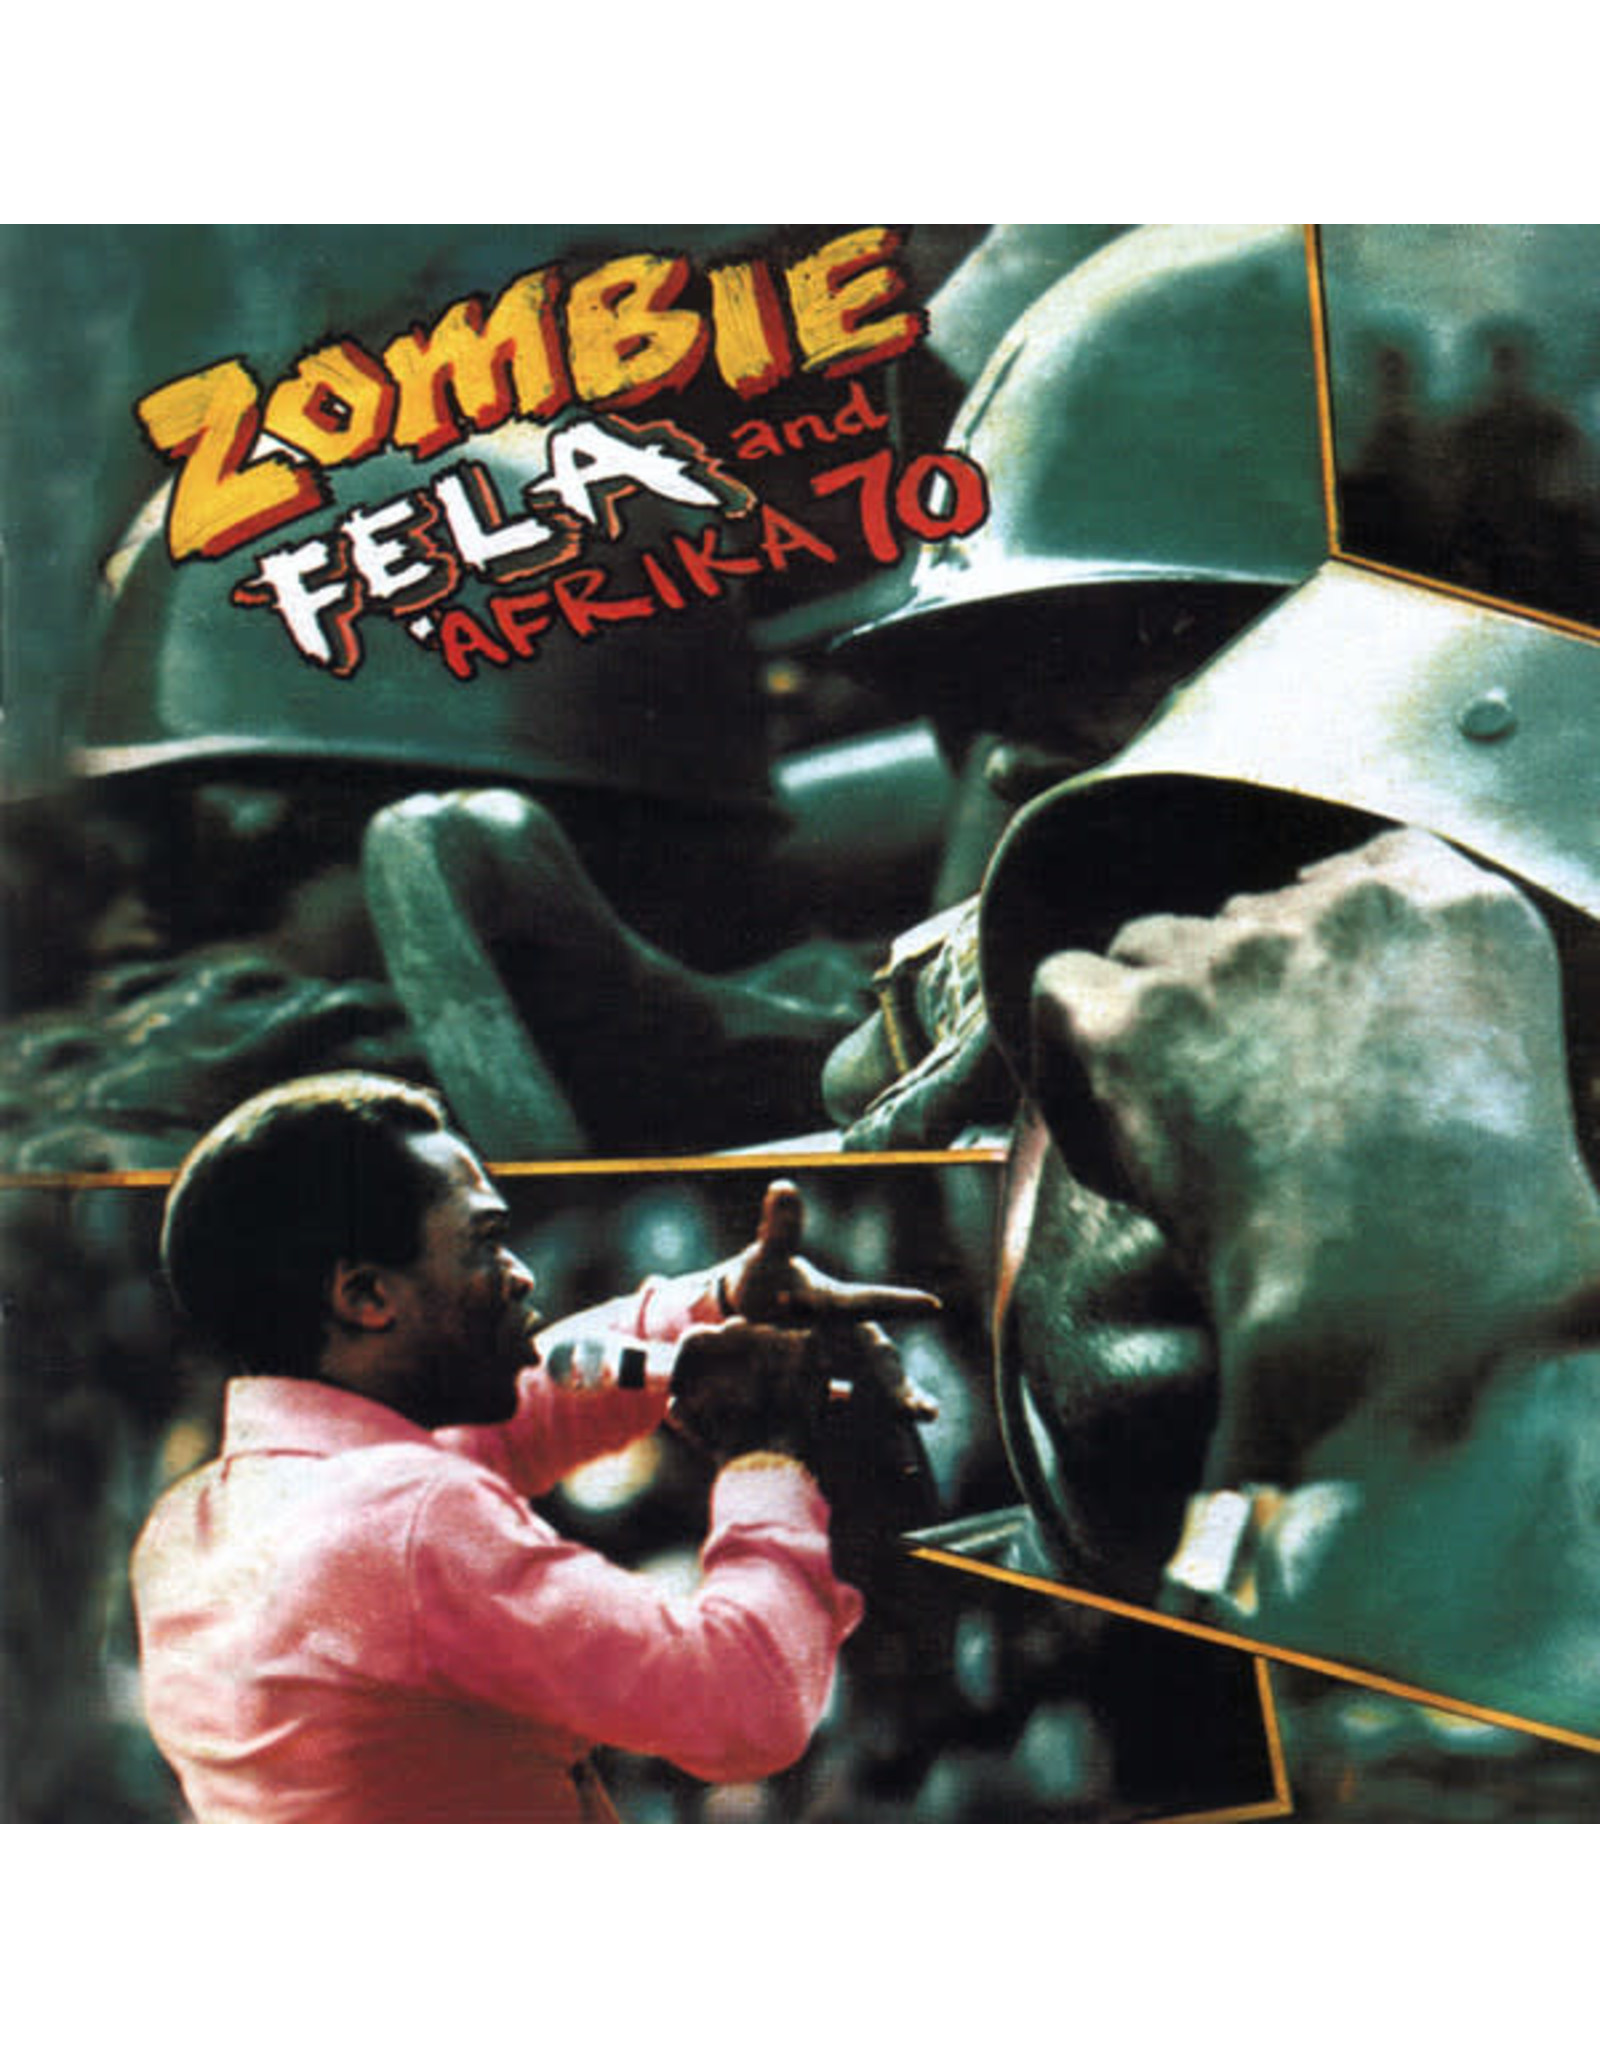 Kuti, Fela and Afrika 70 - Zombie LP